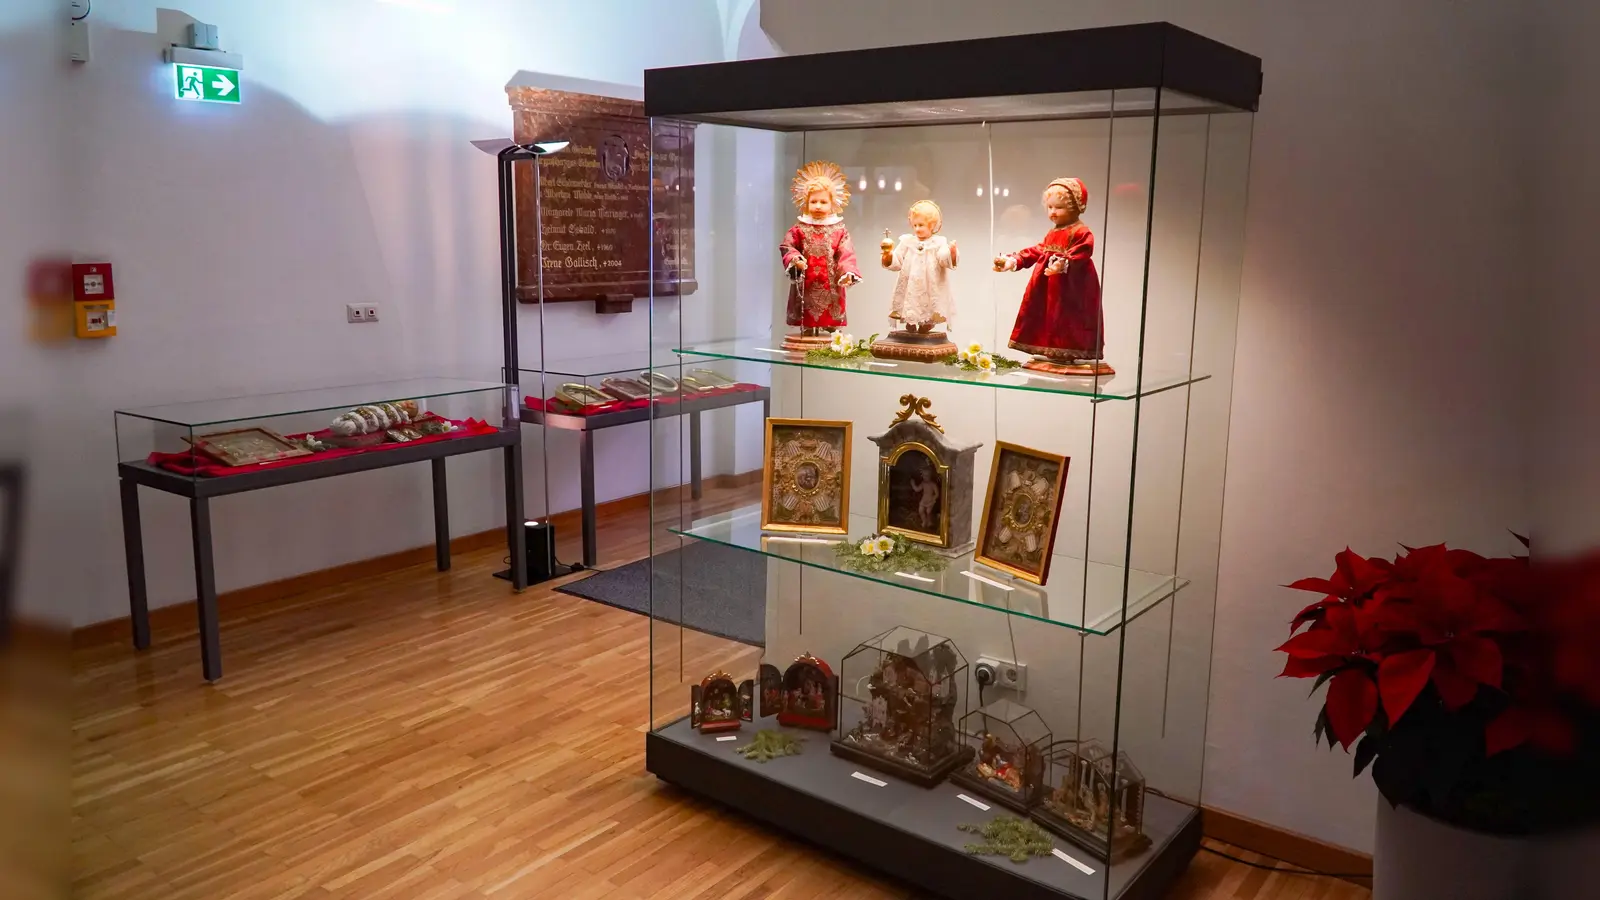 Klosterarbeiten, Christkindl und Krippen sind in einer Ausstellung im Rathaus zu sehen. (Foto: Felix Matthey)